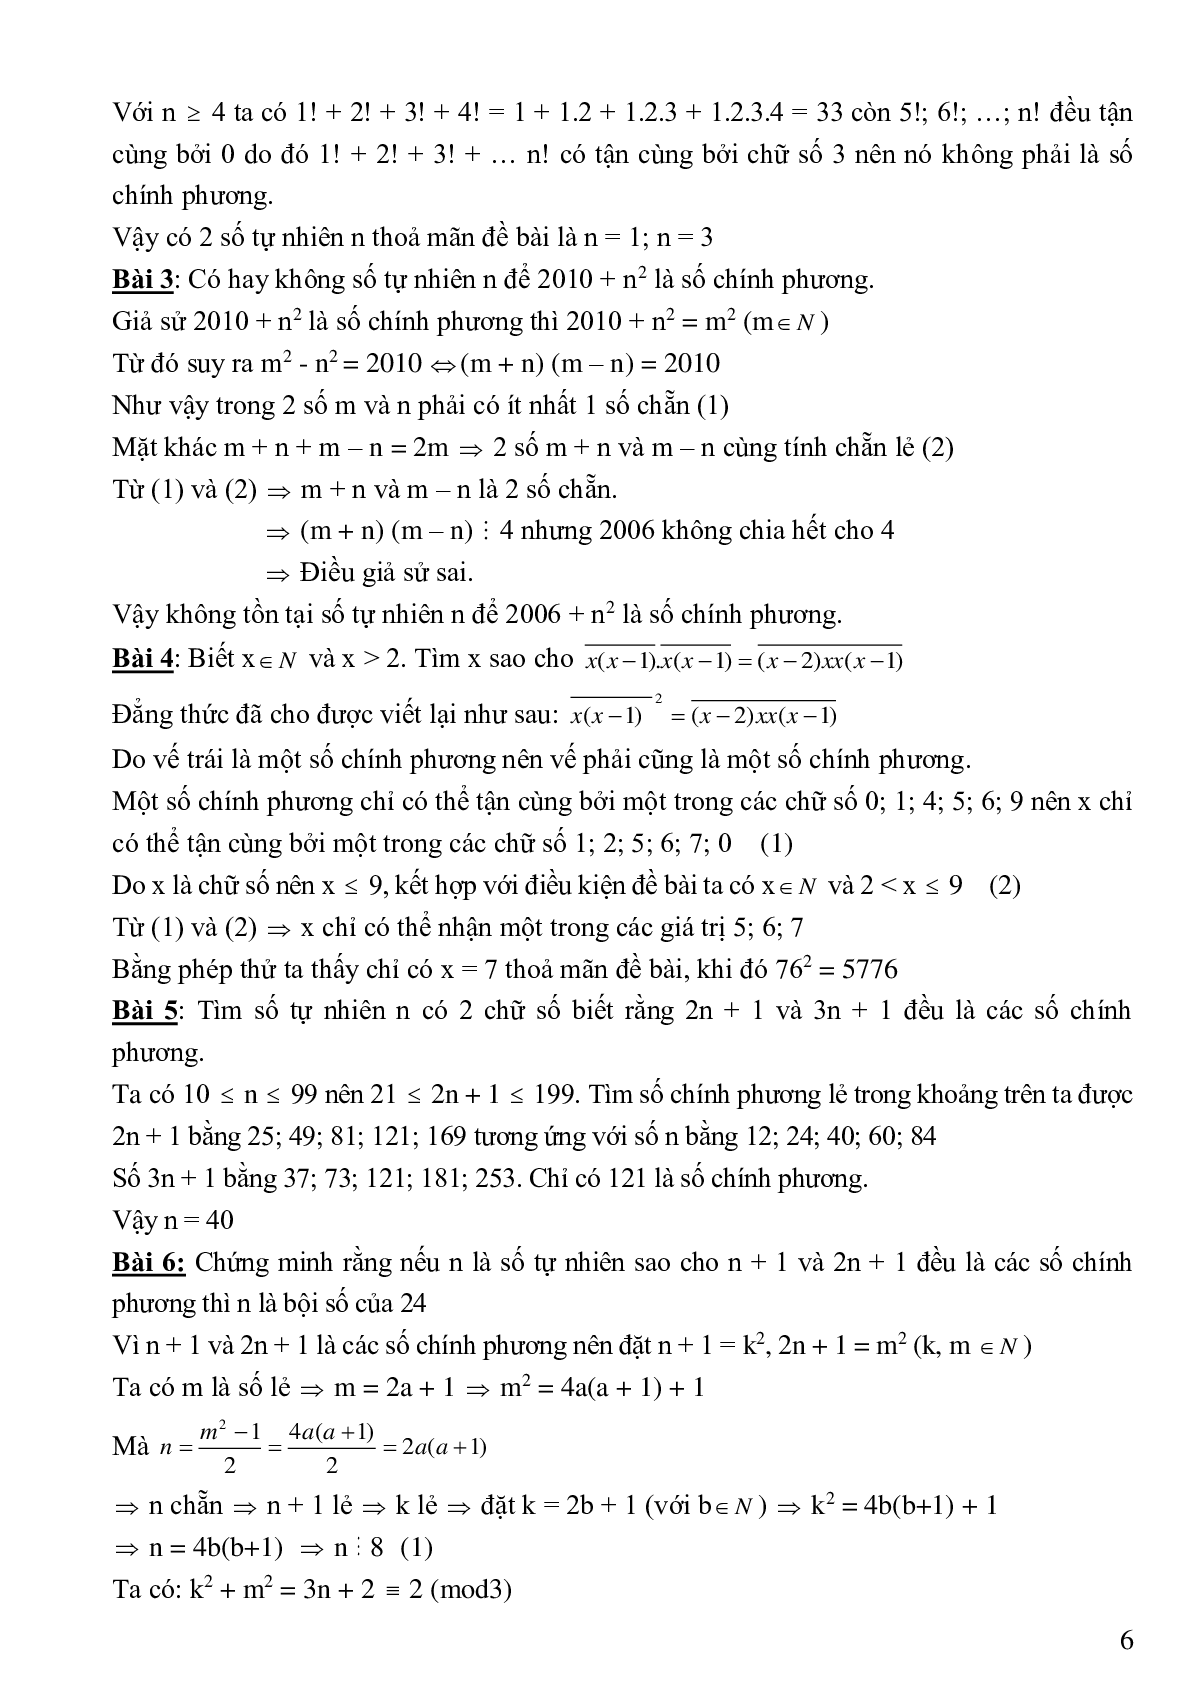 Bài tập cơ bản và nâng cao số chính phương (trang 6)